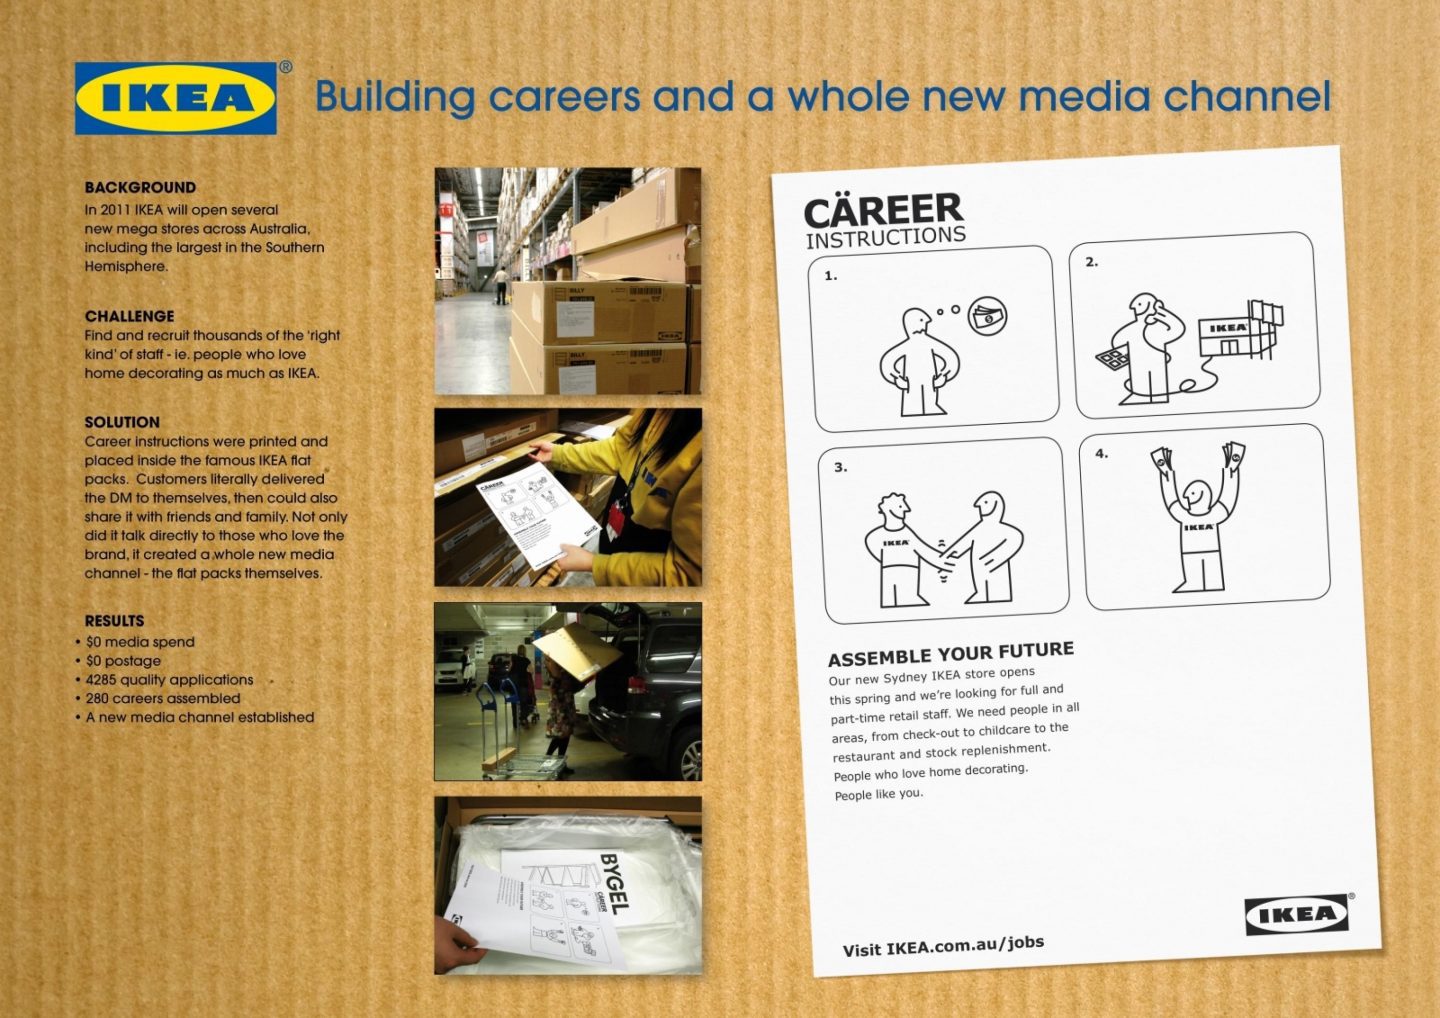 Інструкція з будування кар’єри в IKEA